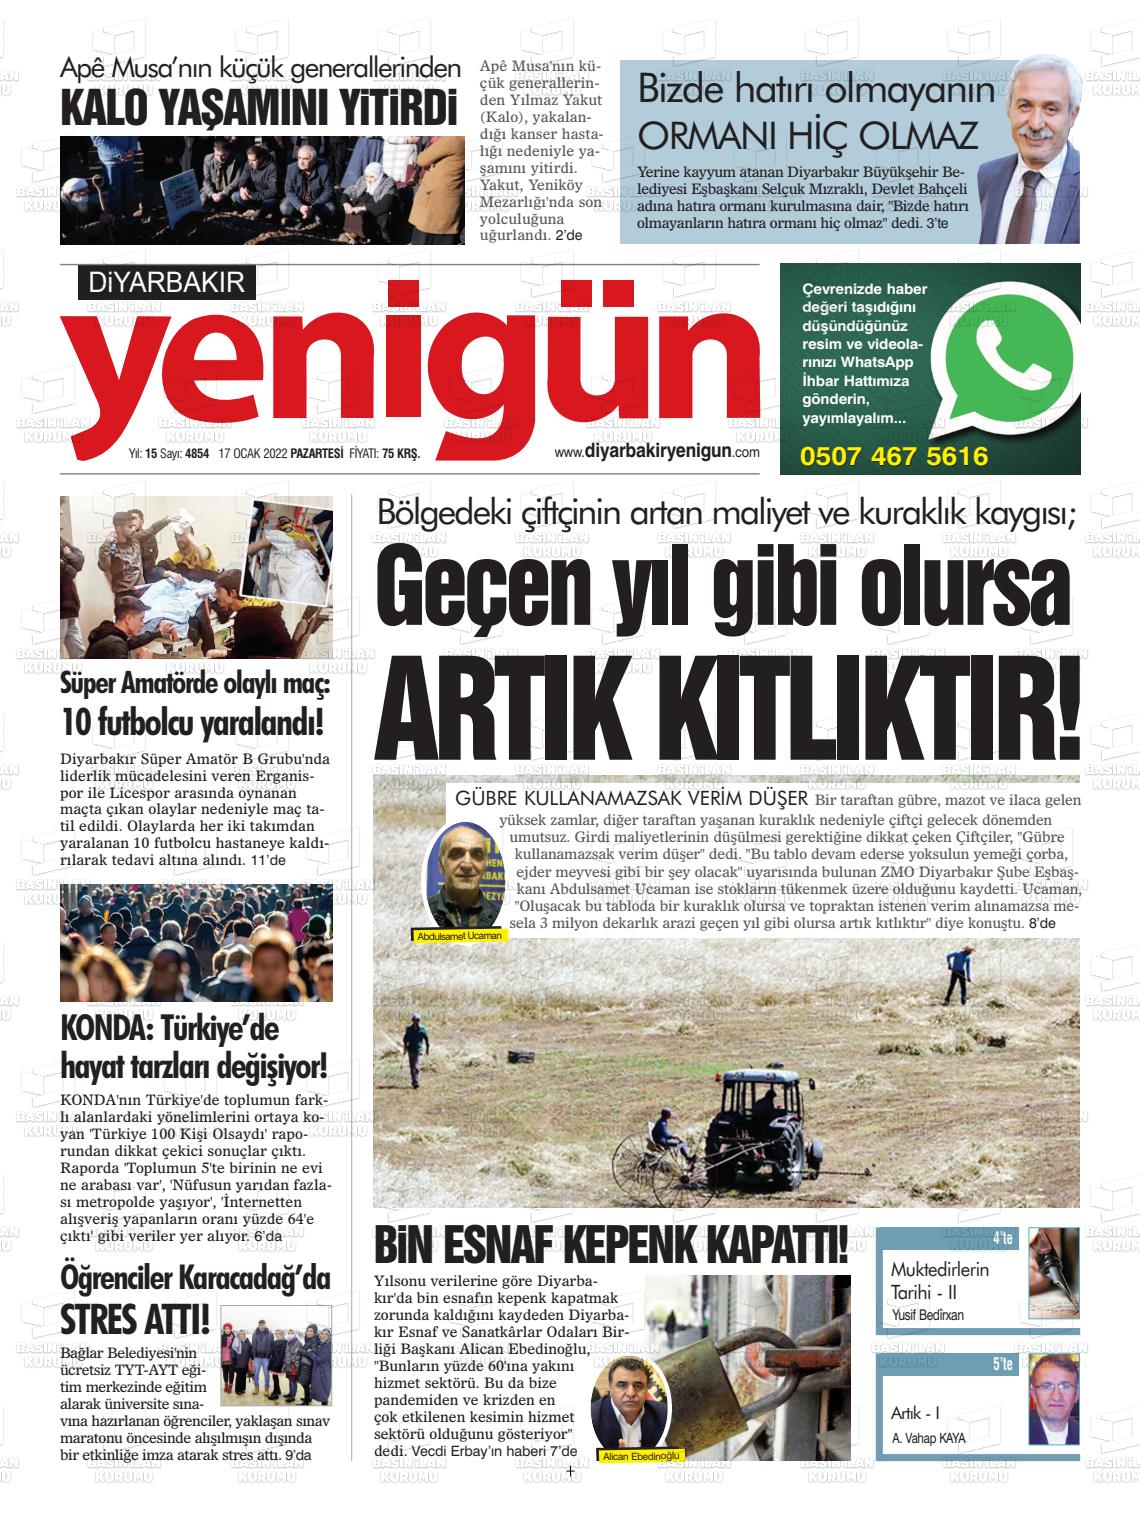 17 Ocak 2022 Diyarbakır Yenigün Gazete Manşeti